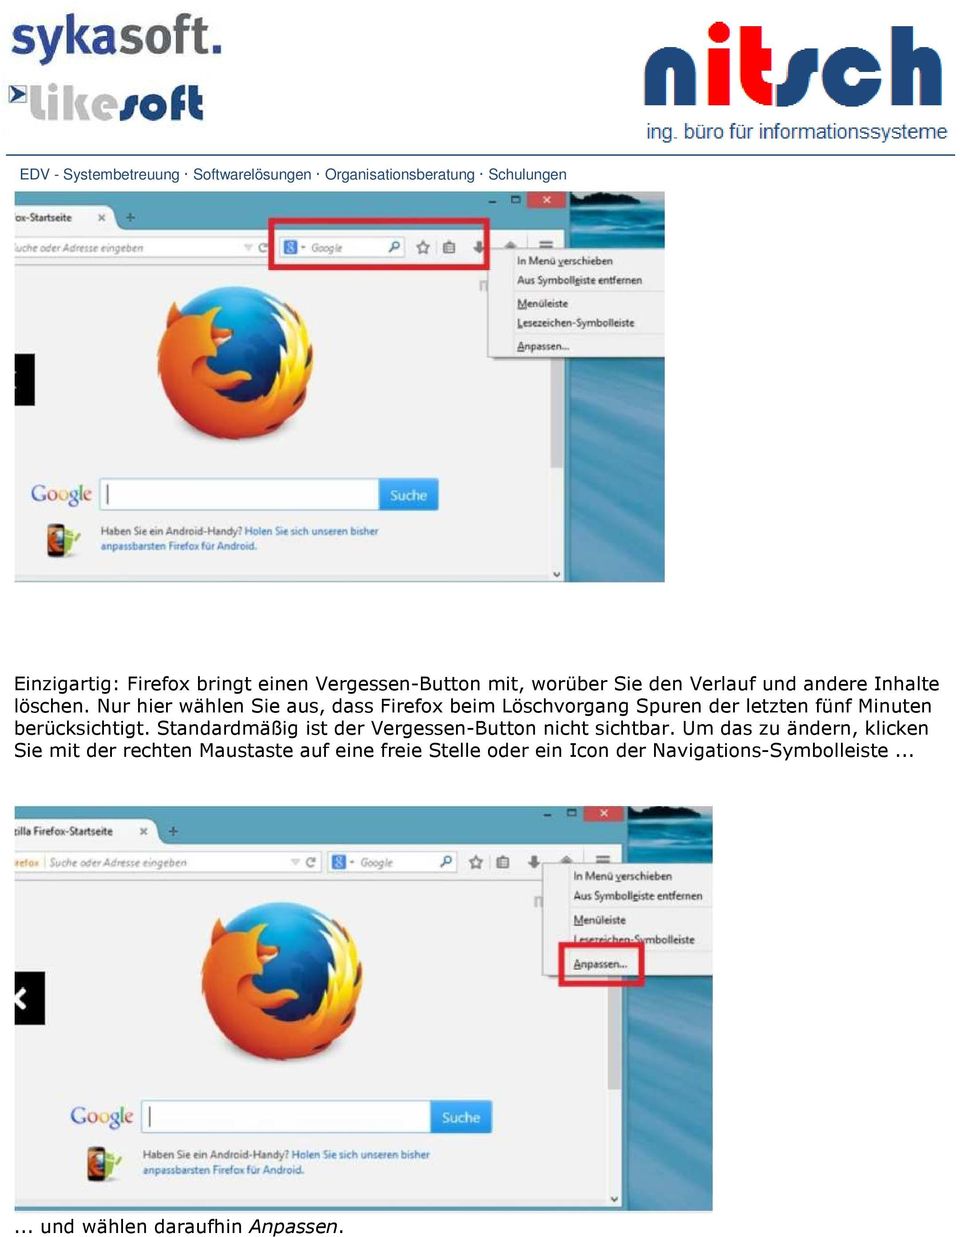 Nur hier wählen Sie aus, dass Firefox beim Löschvorgang Spuren der letzten fünf Minuten berücksichtigt.